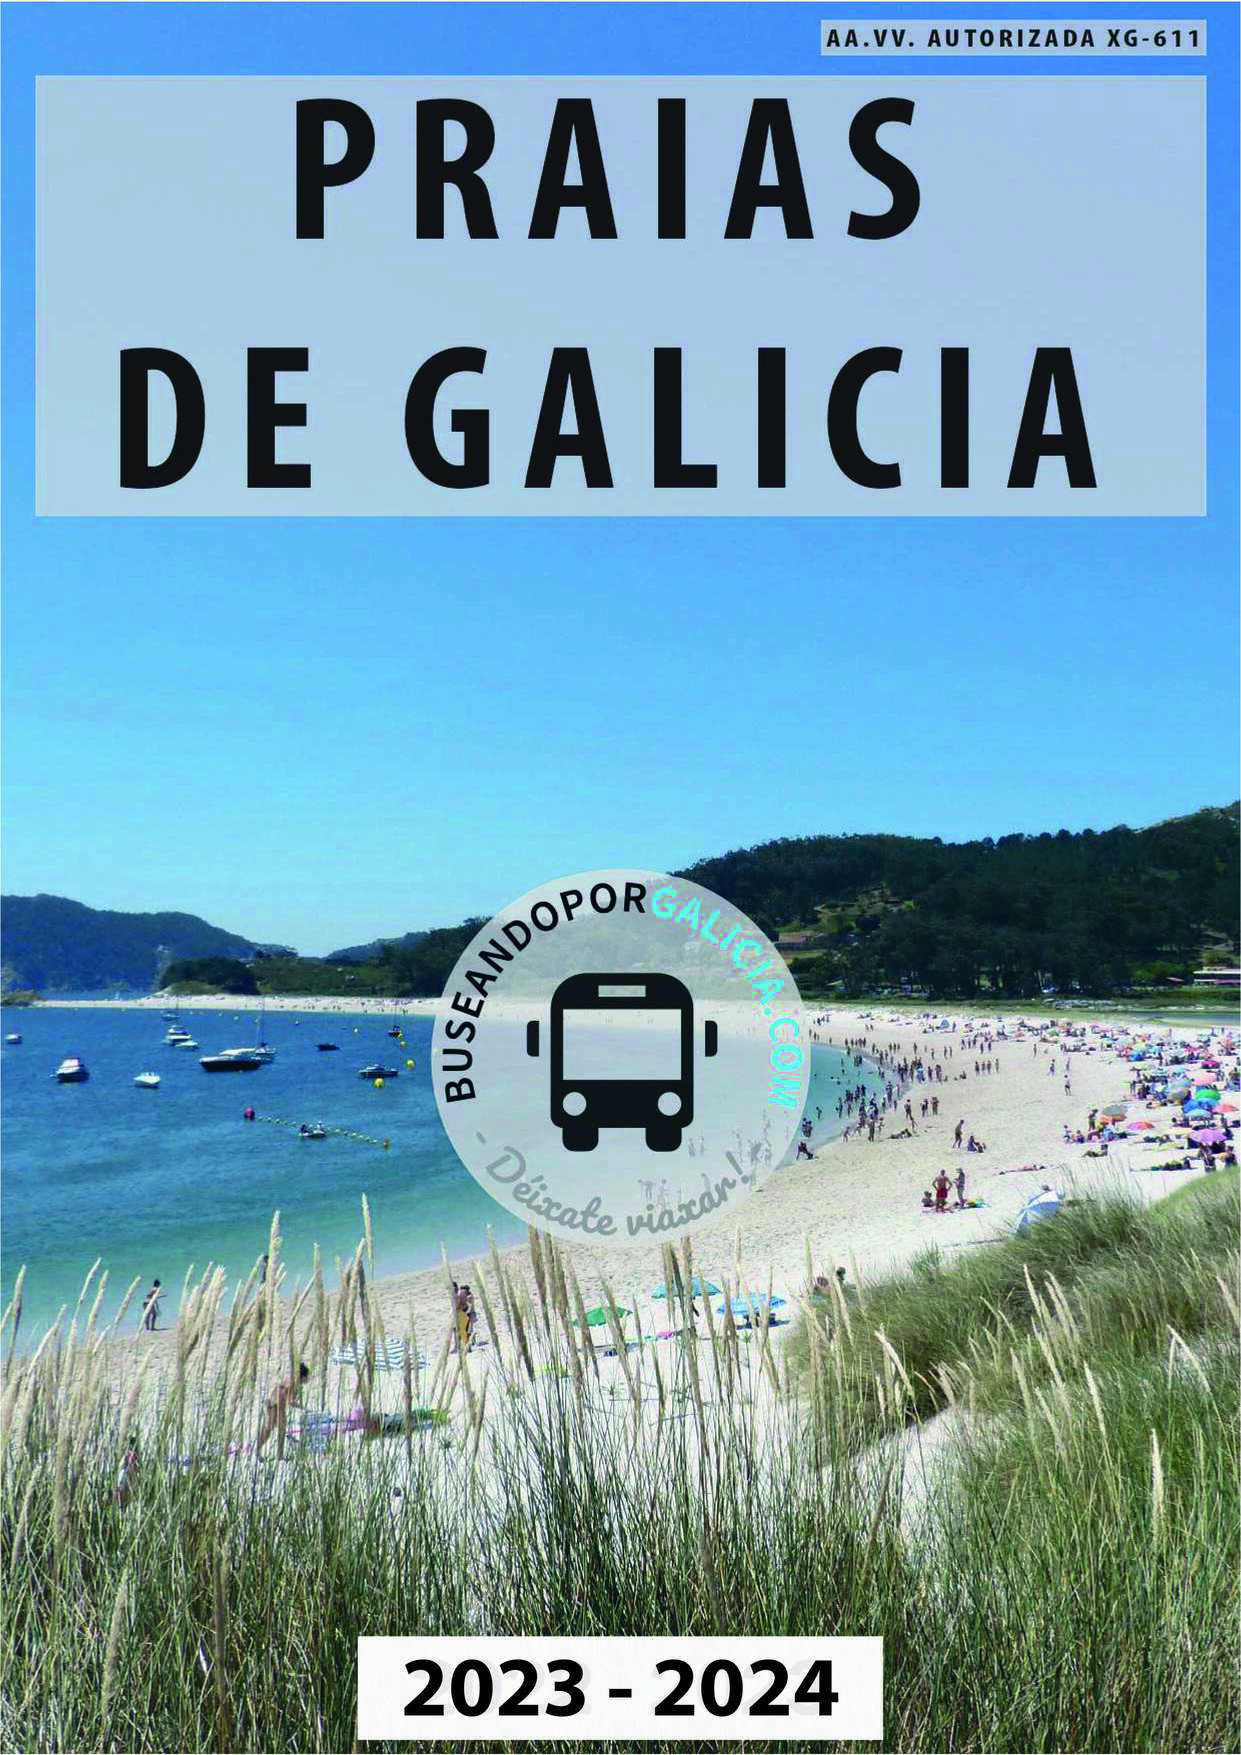 Praias de Galicia